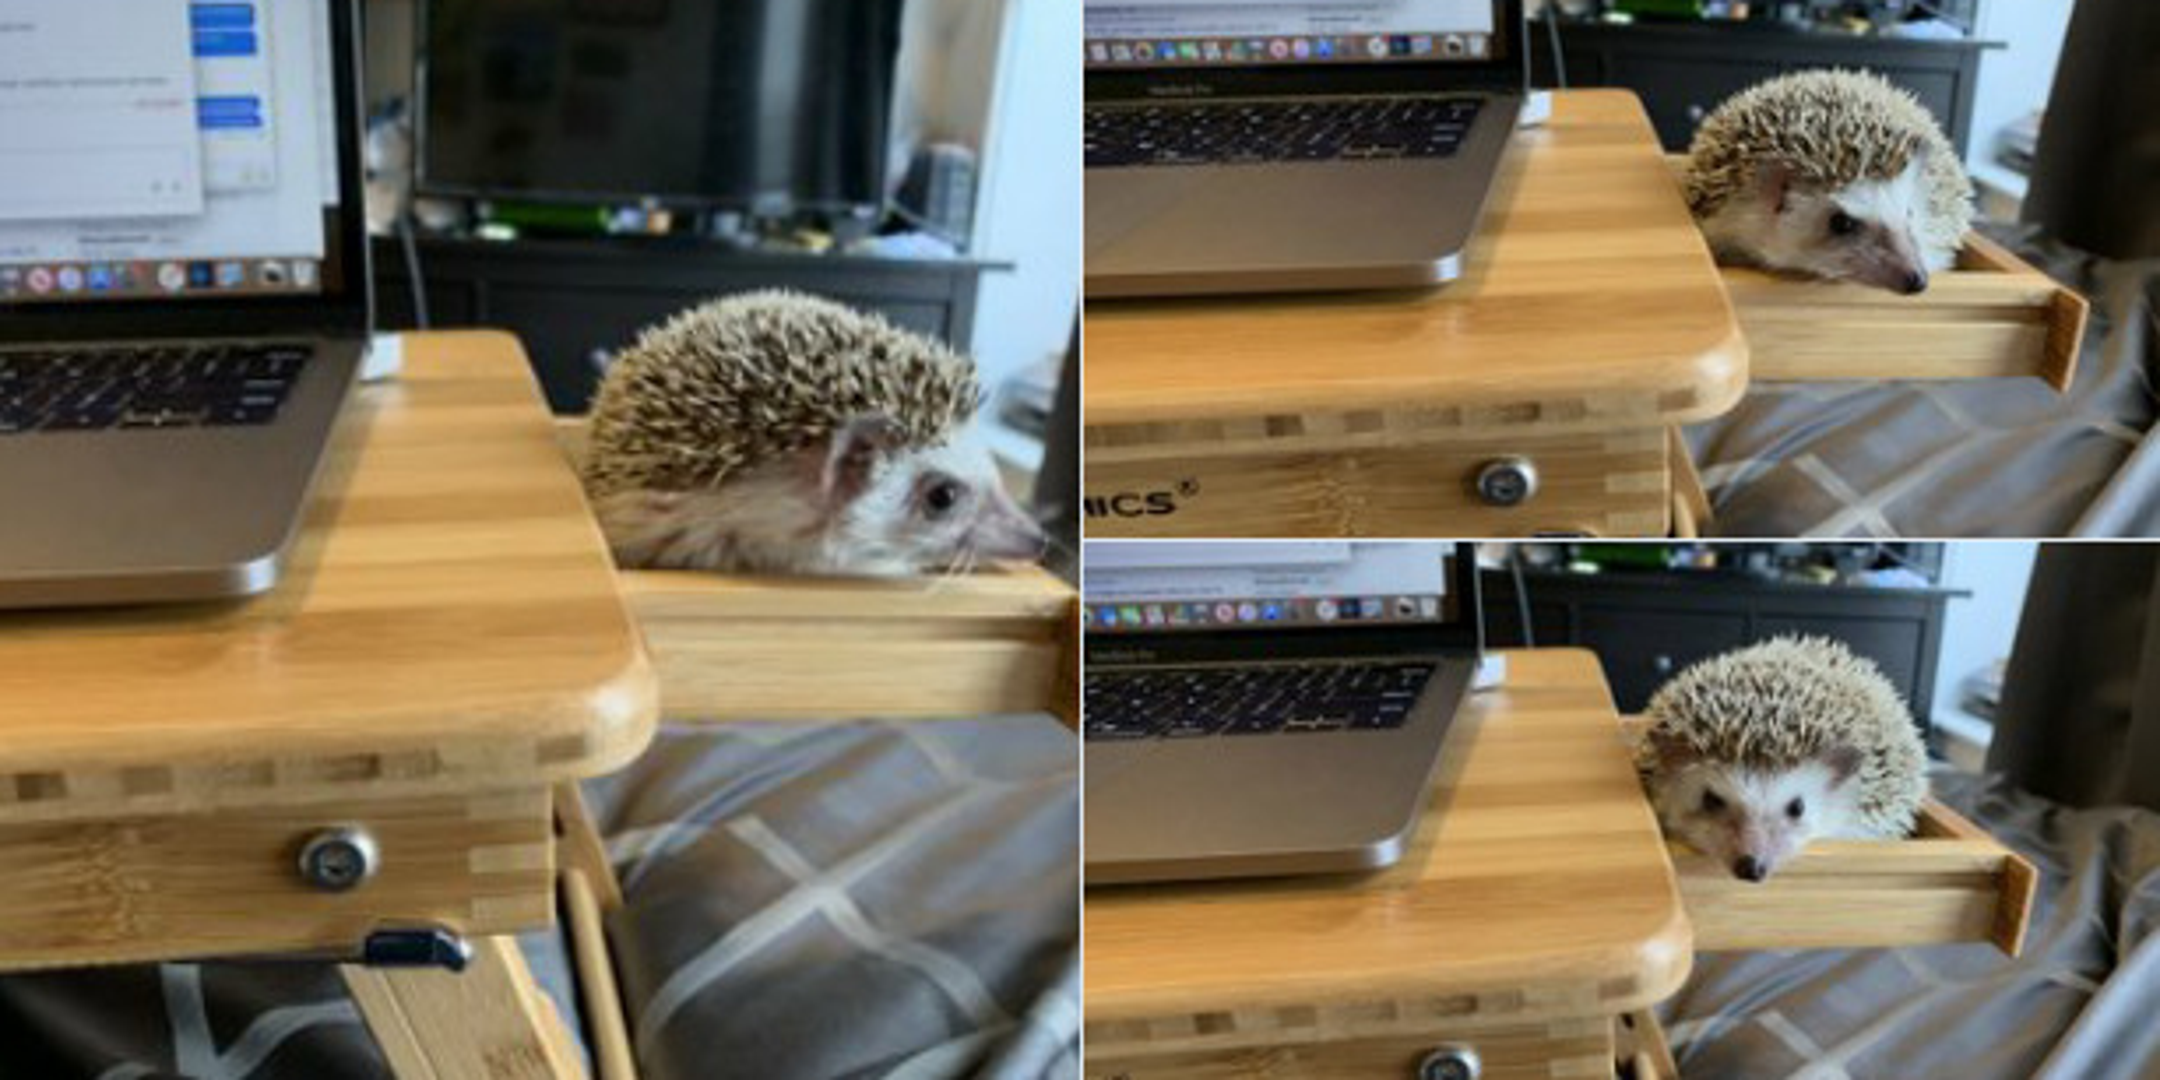 Postolje za laptop ima malu ladicu sa strane koja je savršene veličine da se kućni ljubimac jež smjesti u nju i pravi društvo vlasniku koji radi.
